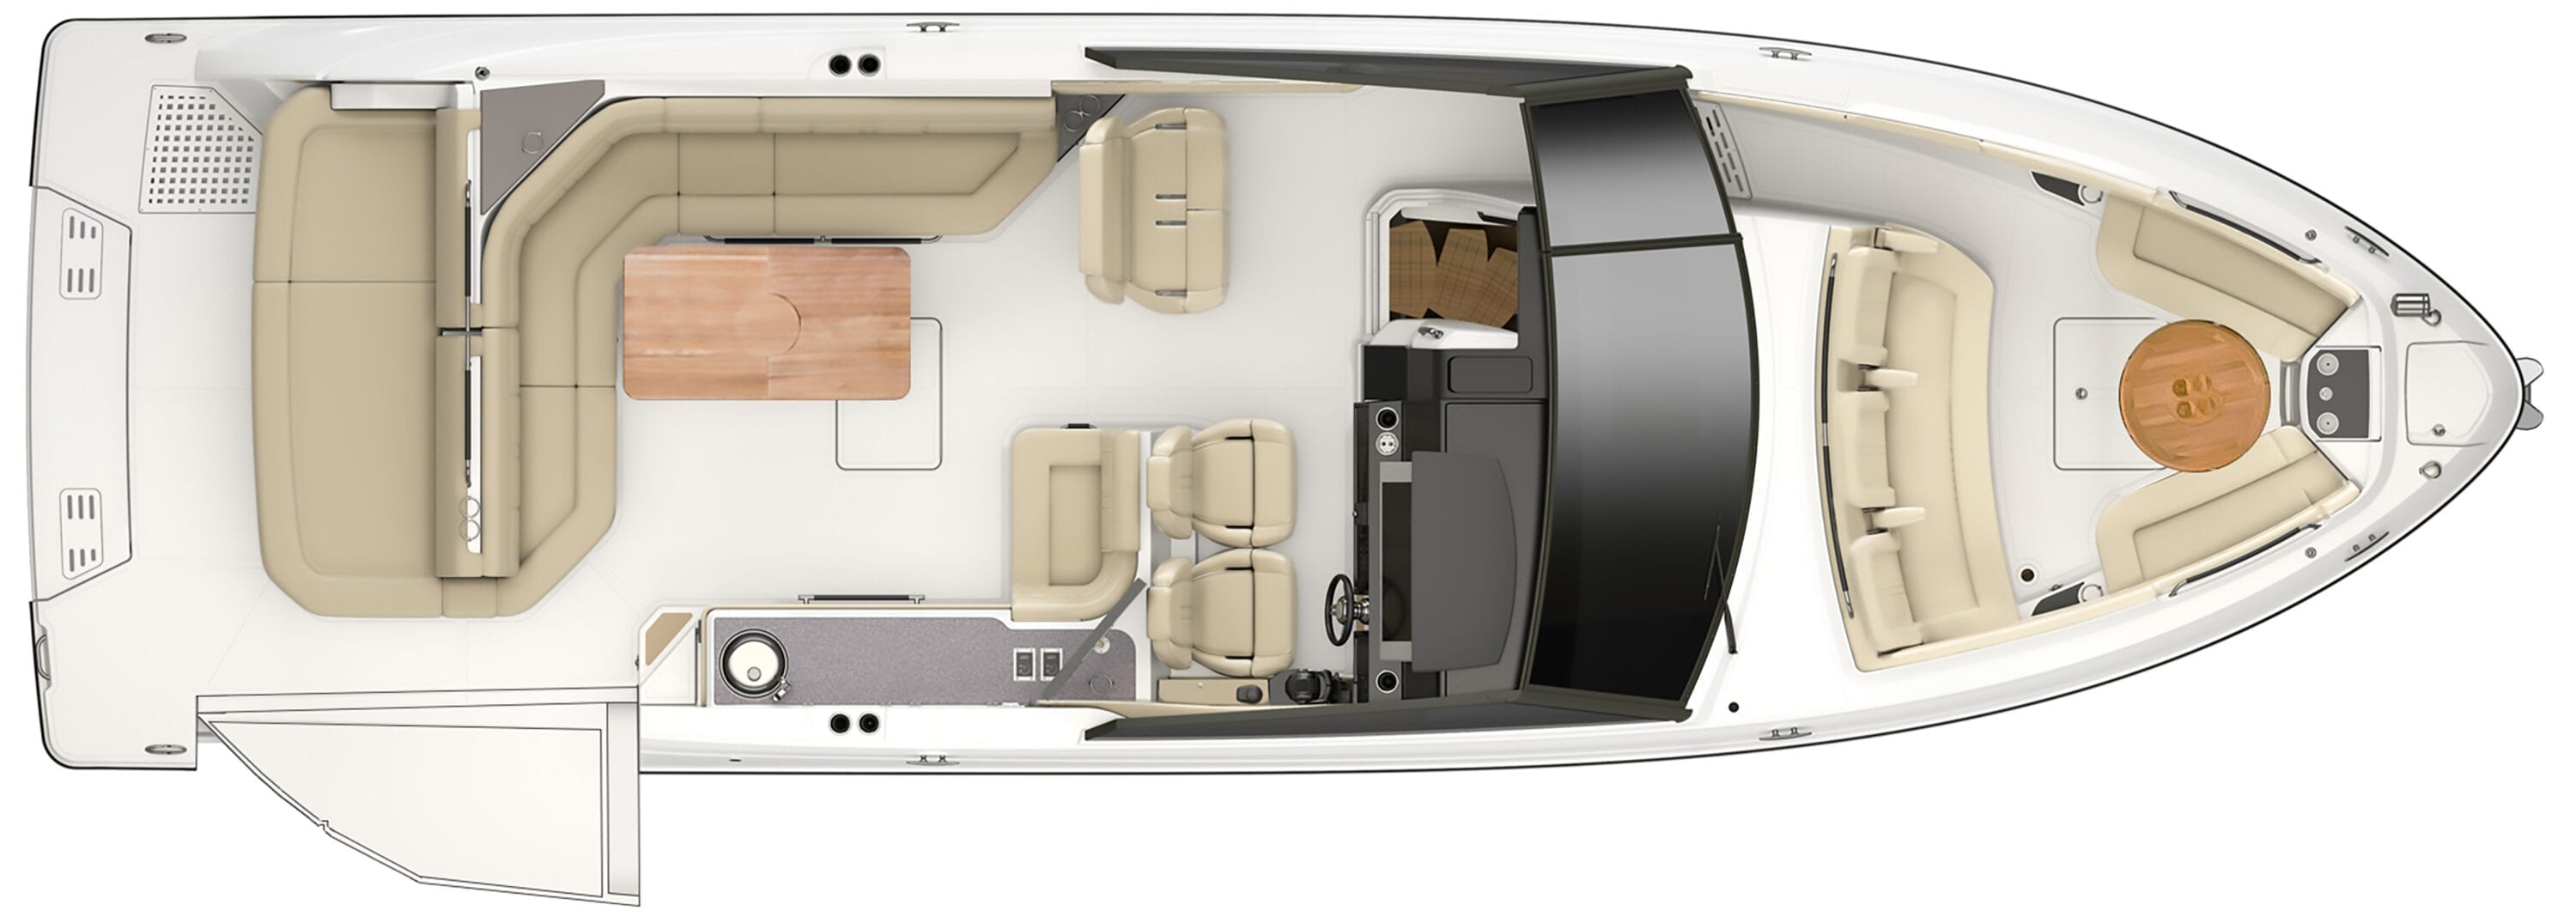 floorplan_2020_SLX400_cockpit